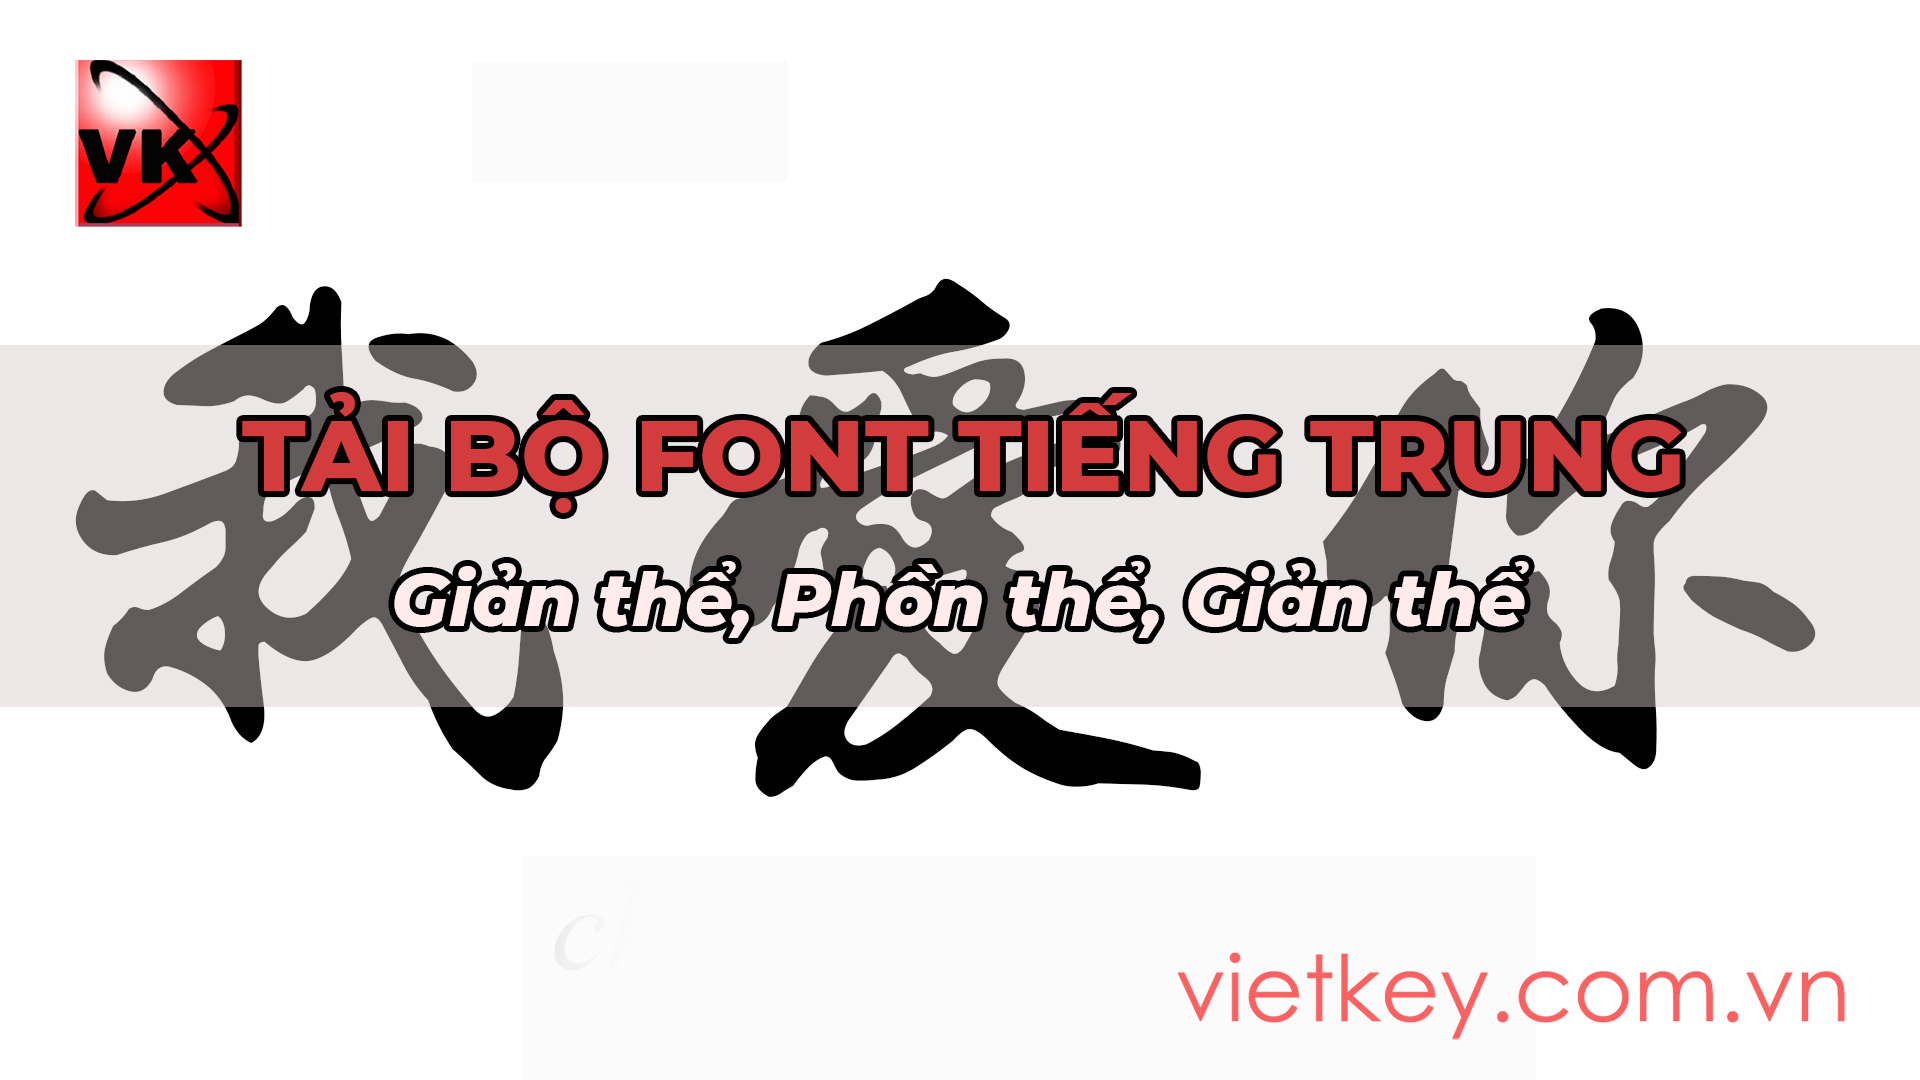 Phông Tiếng Trung: Sáng tạo với những font chữ tiếng Trung sẽ trở nên dễ dàng hơn bao giờ hết khi bạn tìm đến chúng tôi. Chúng tôi cung cấp những phông chữ tiếng Trung độc đáo và đẹp mắt nhất để giúp cho việc thiết kế của bạn thêm phần nổi bật và độc đáo. Hãy nhấn vào hình ảnh để khám phá thêm những font chữ đẹp này.